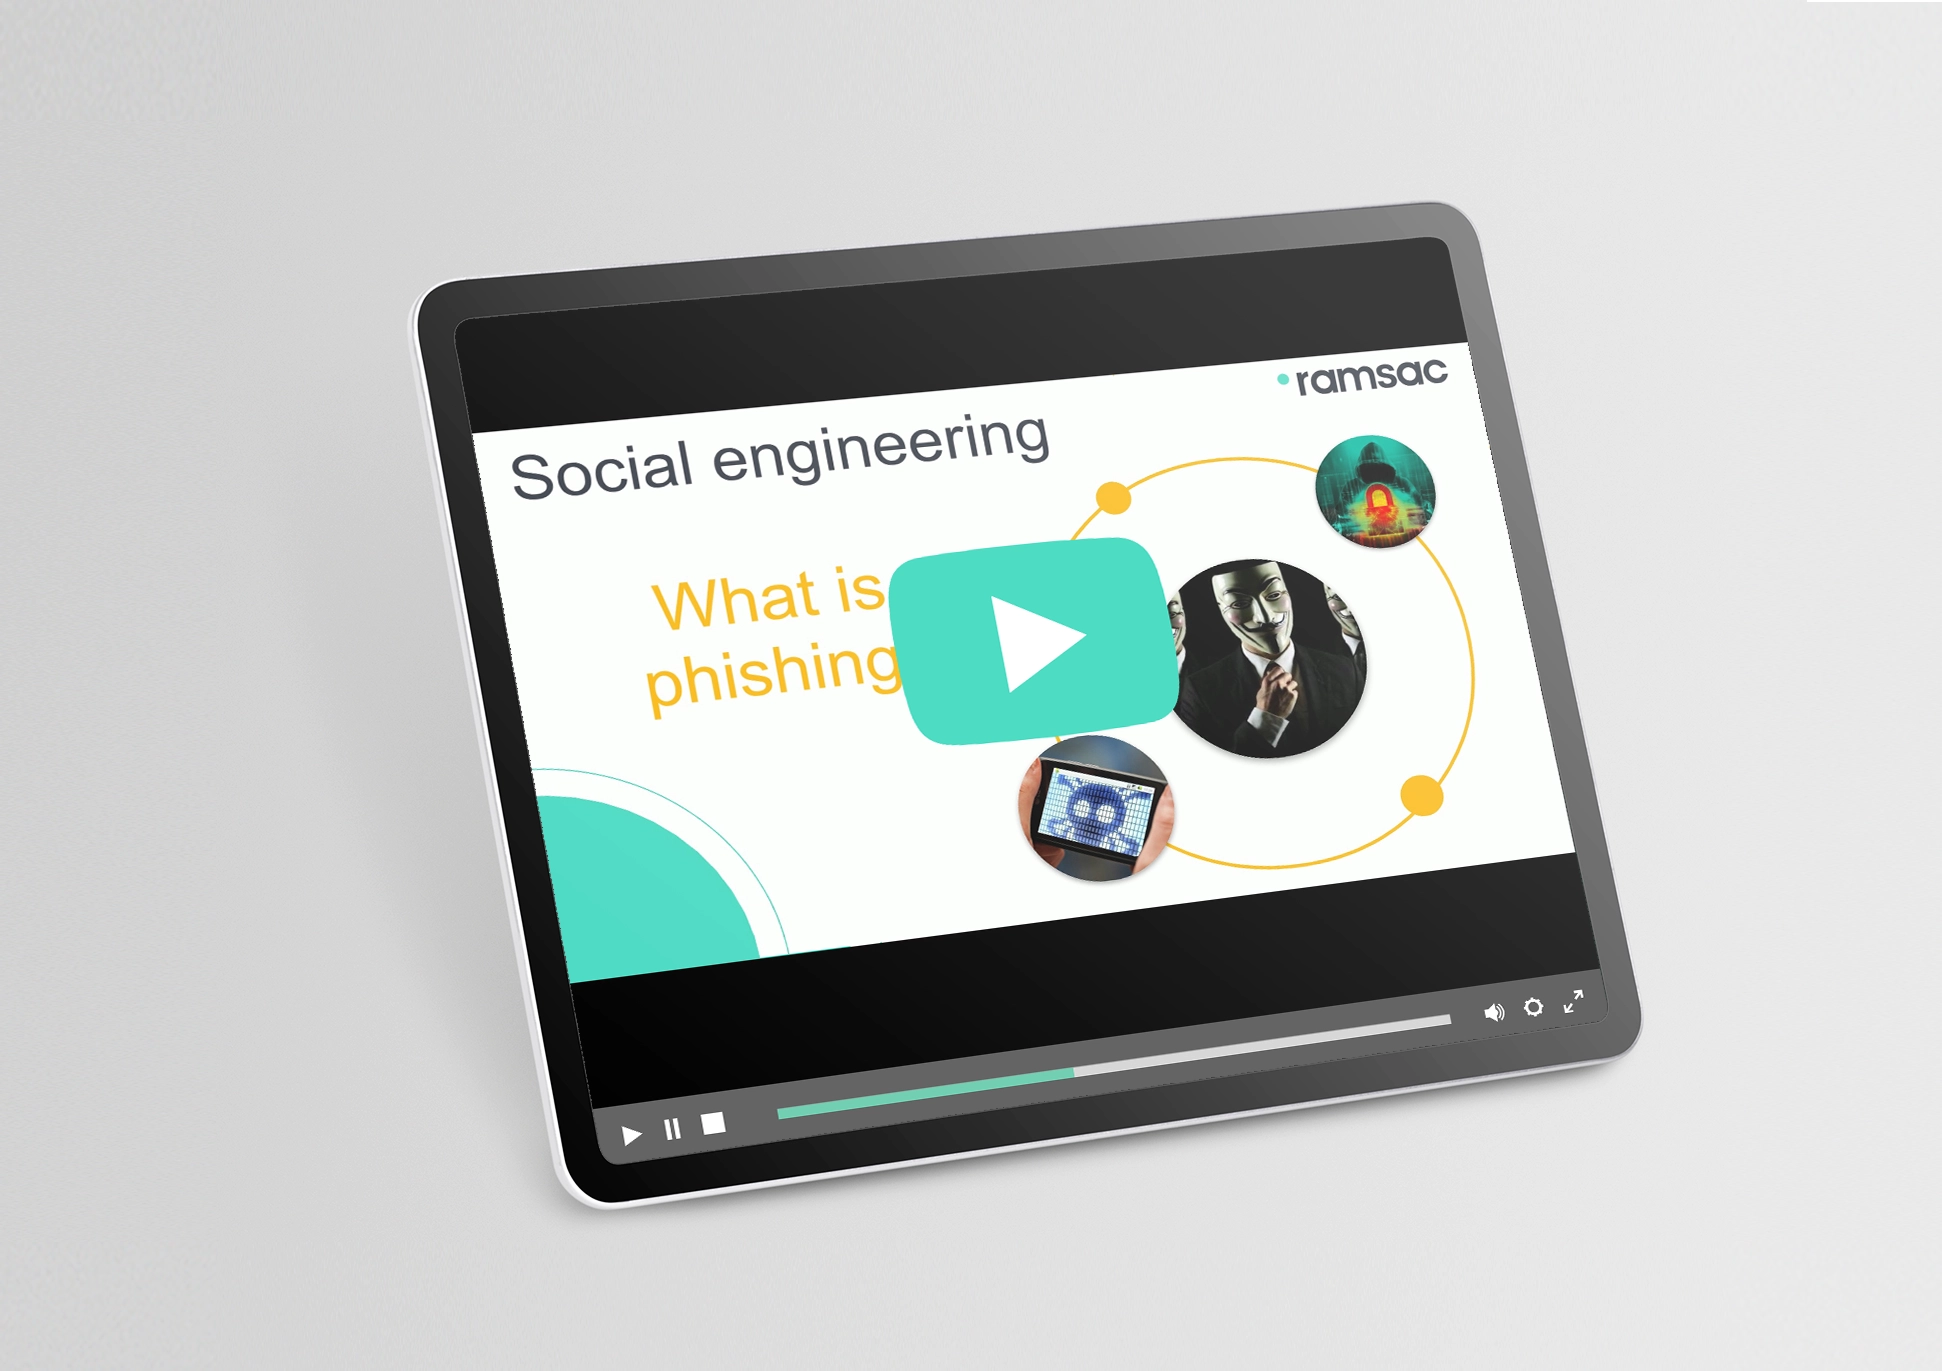 Phishing: Social Engineering series from ramsac